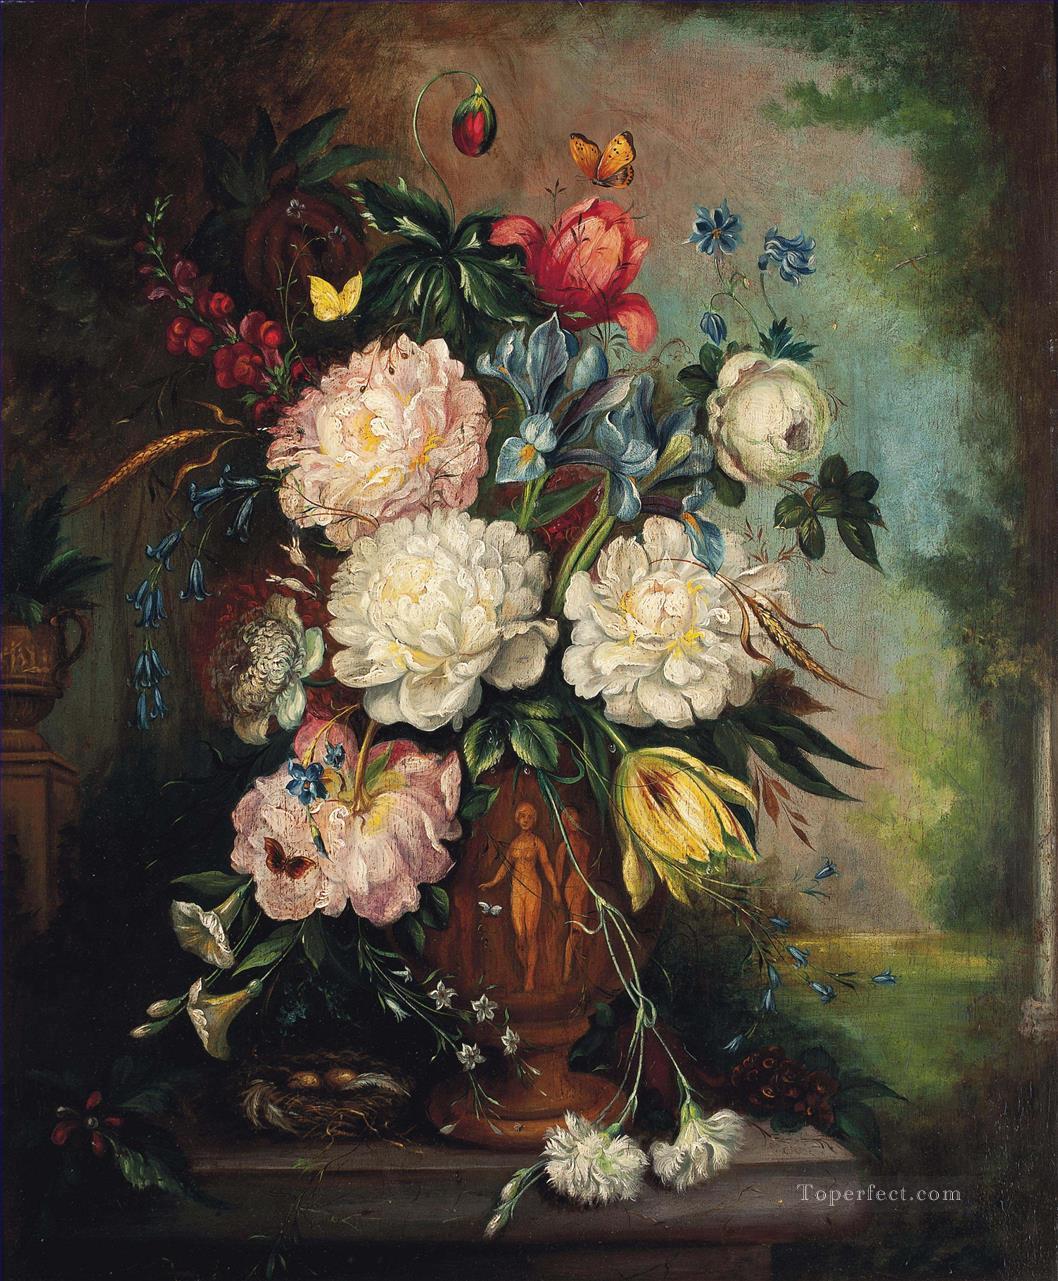 Rosas, peonías, iris, tulipanes, claveles, enredadera y cepo en un jarrón esculpido de Jan van Huysum. Pintura al óleo